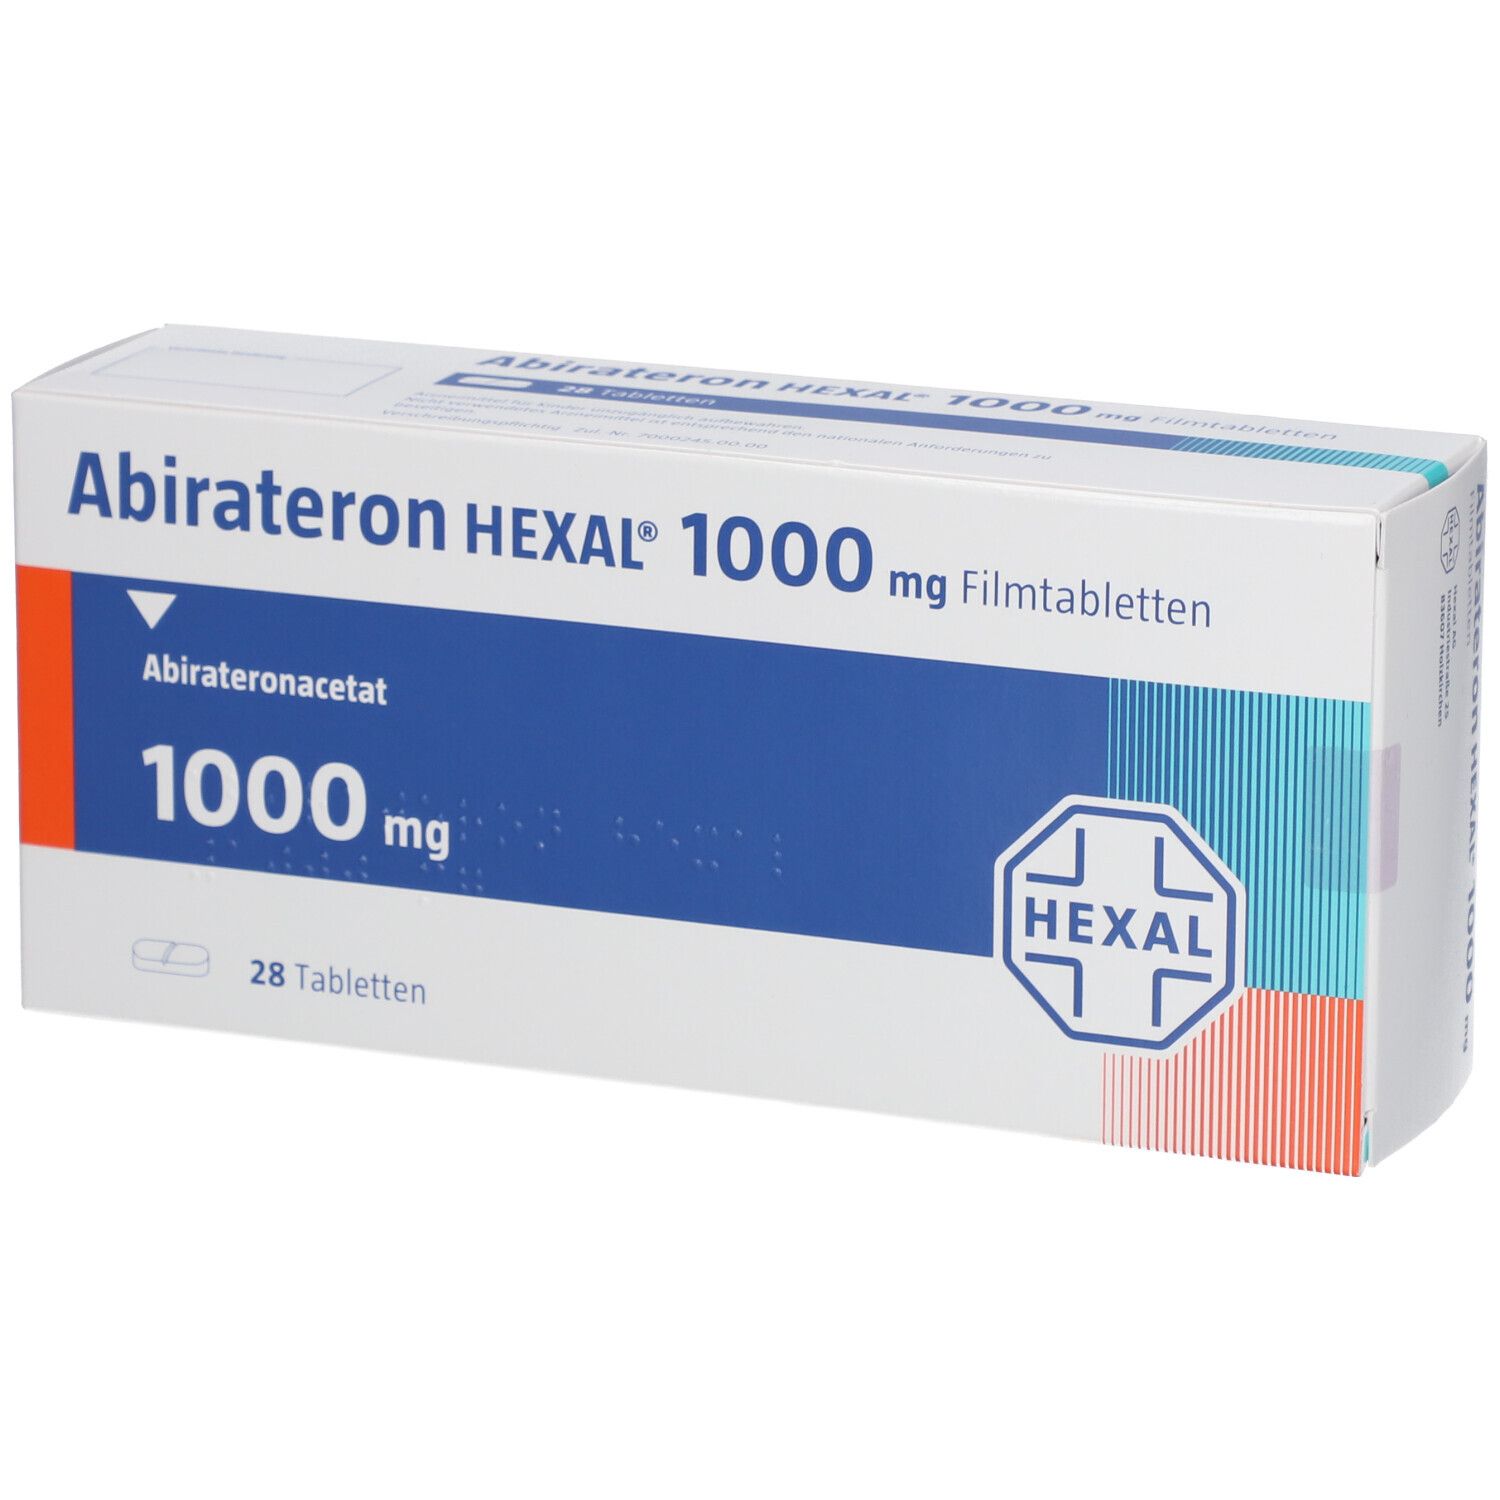 Abirateron HEXAL 1000 mg Filmtabletten